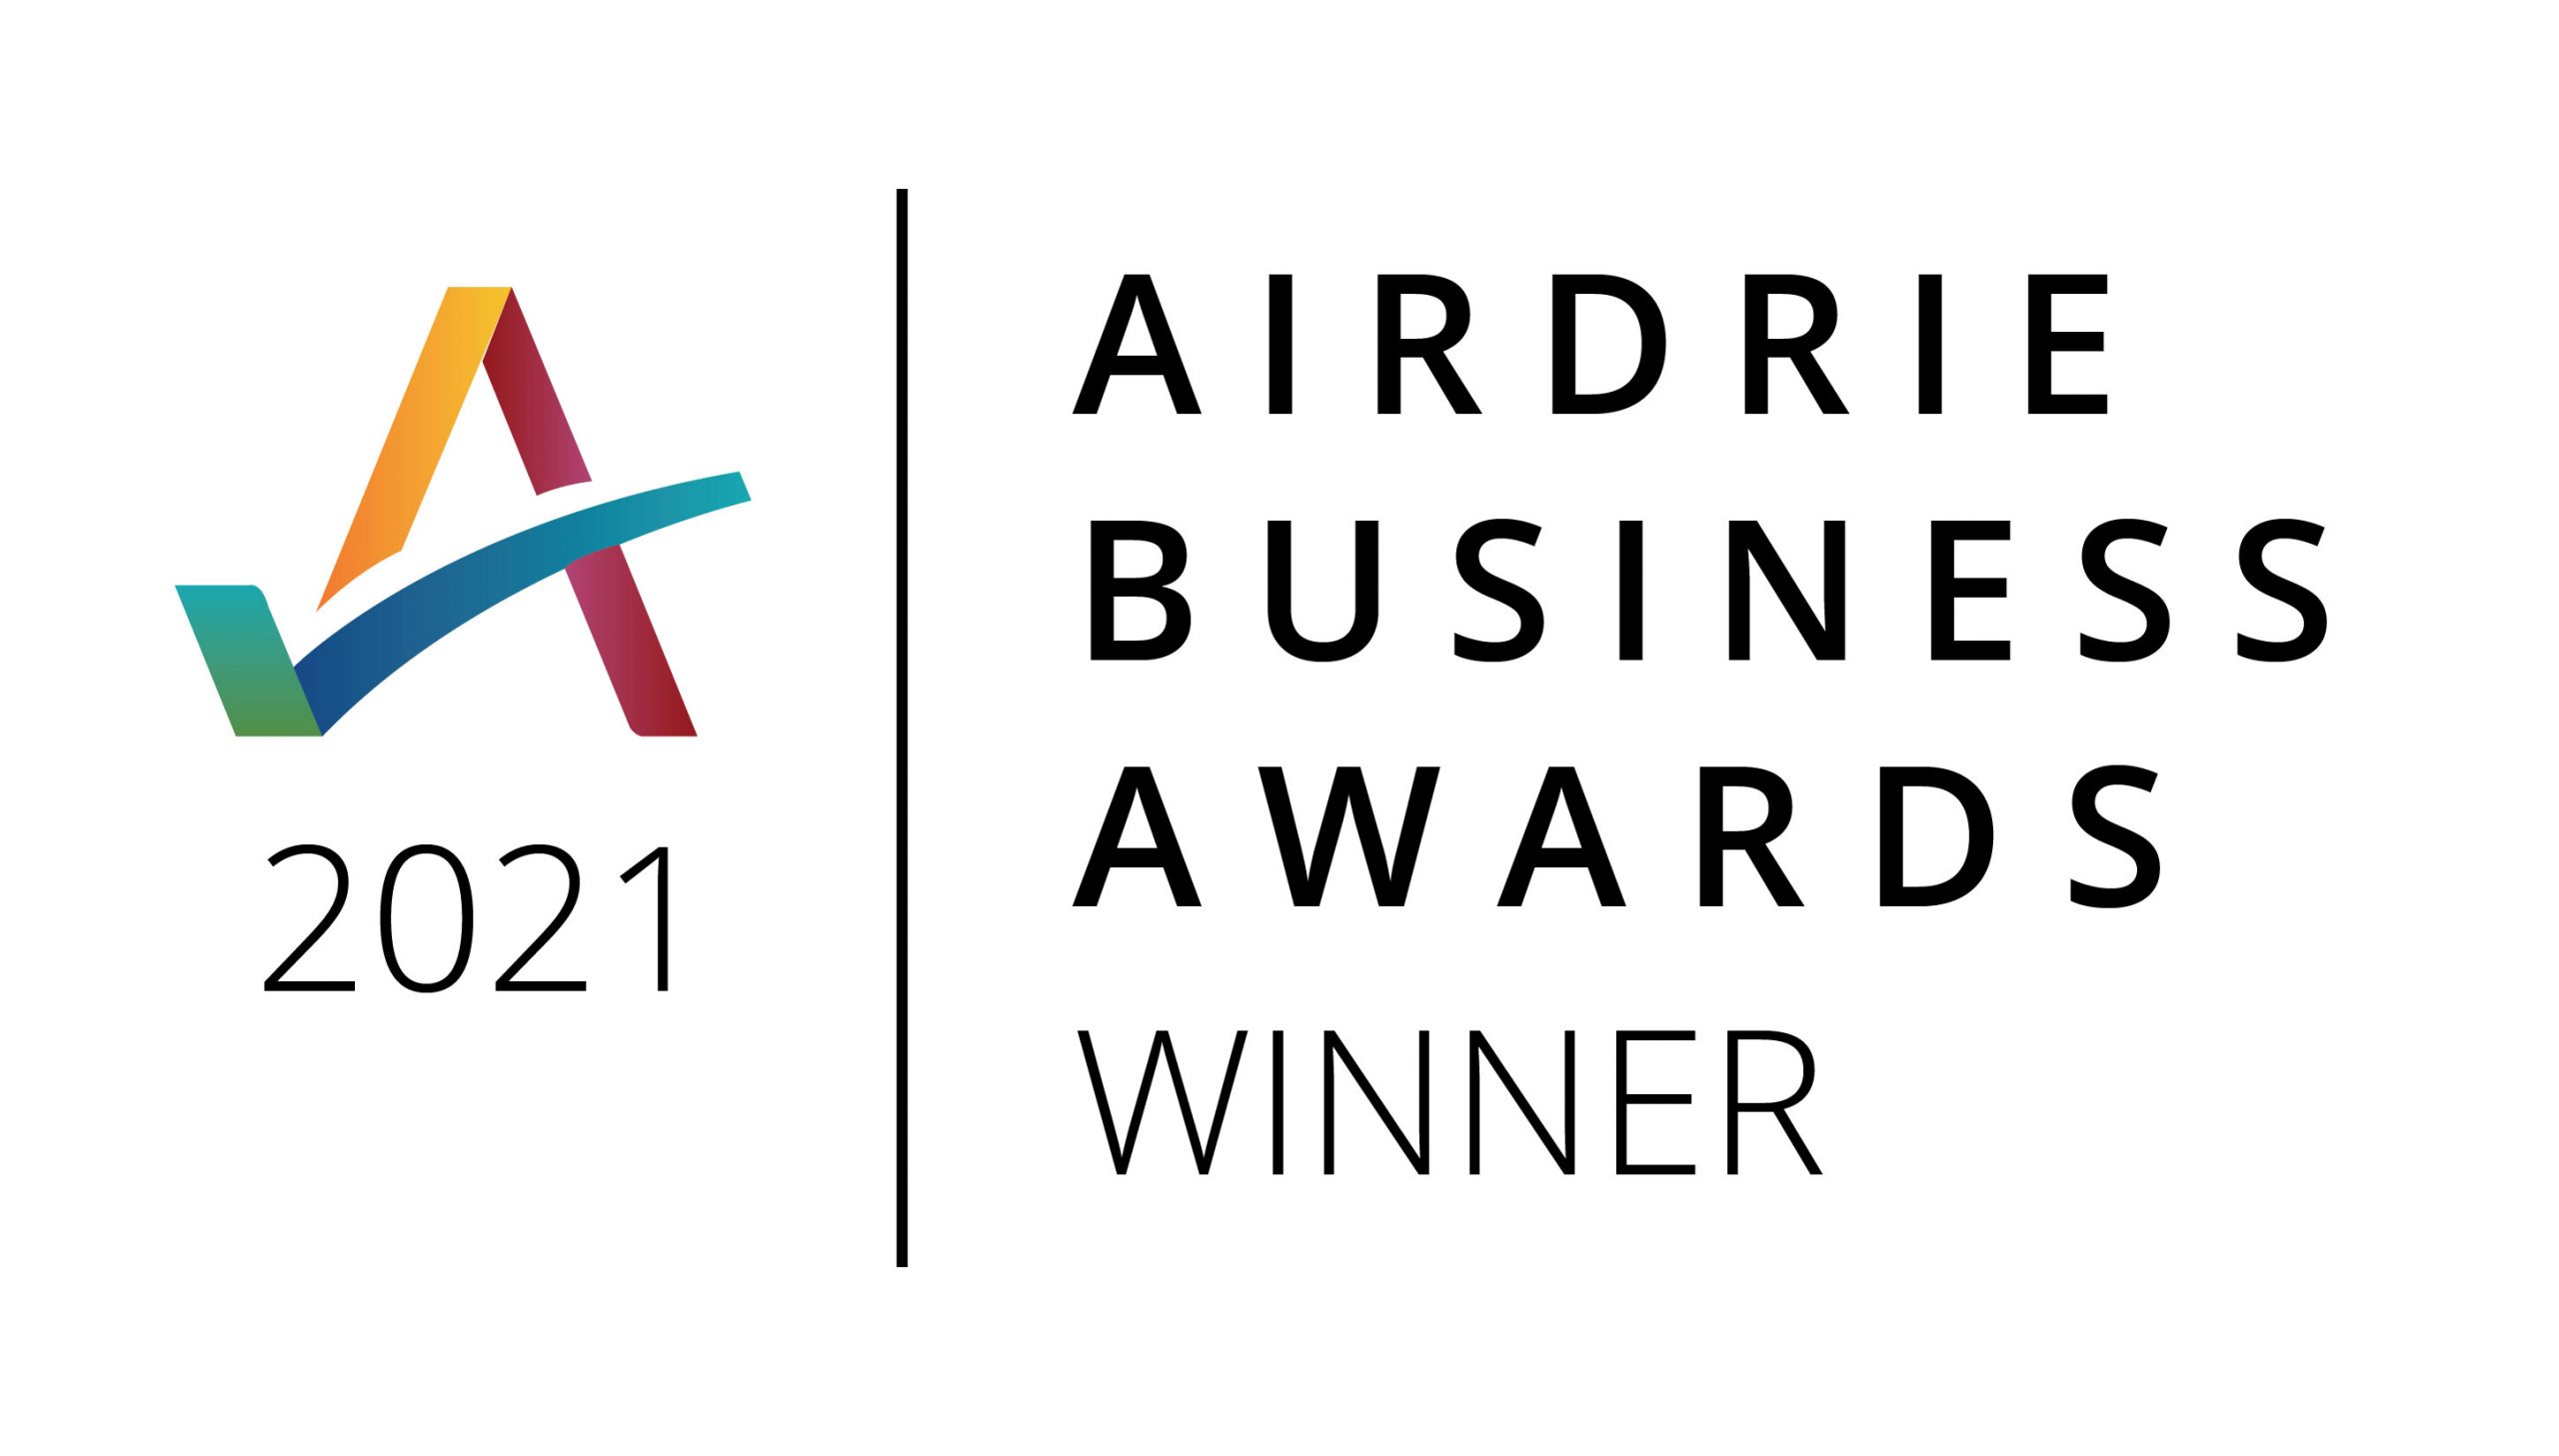 airdrie-business-awards-winner-logo